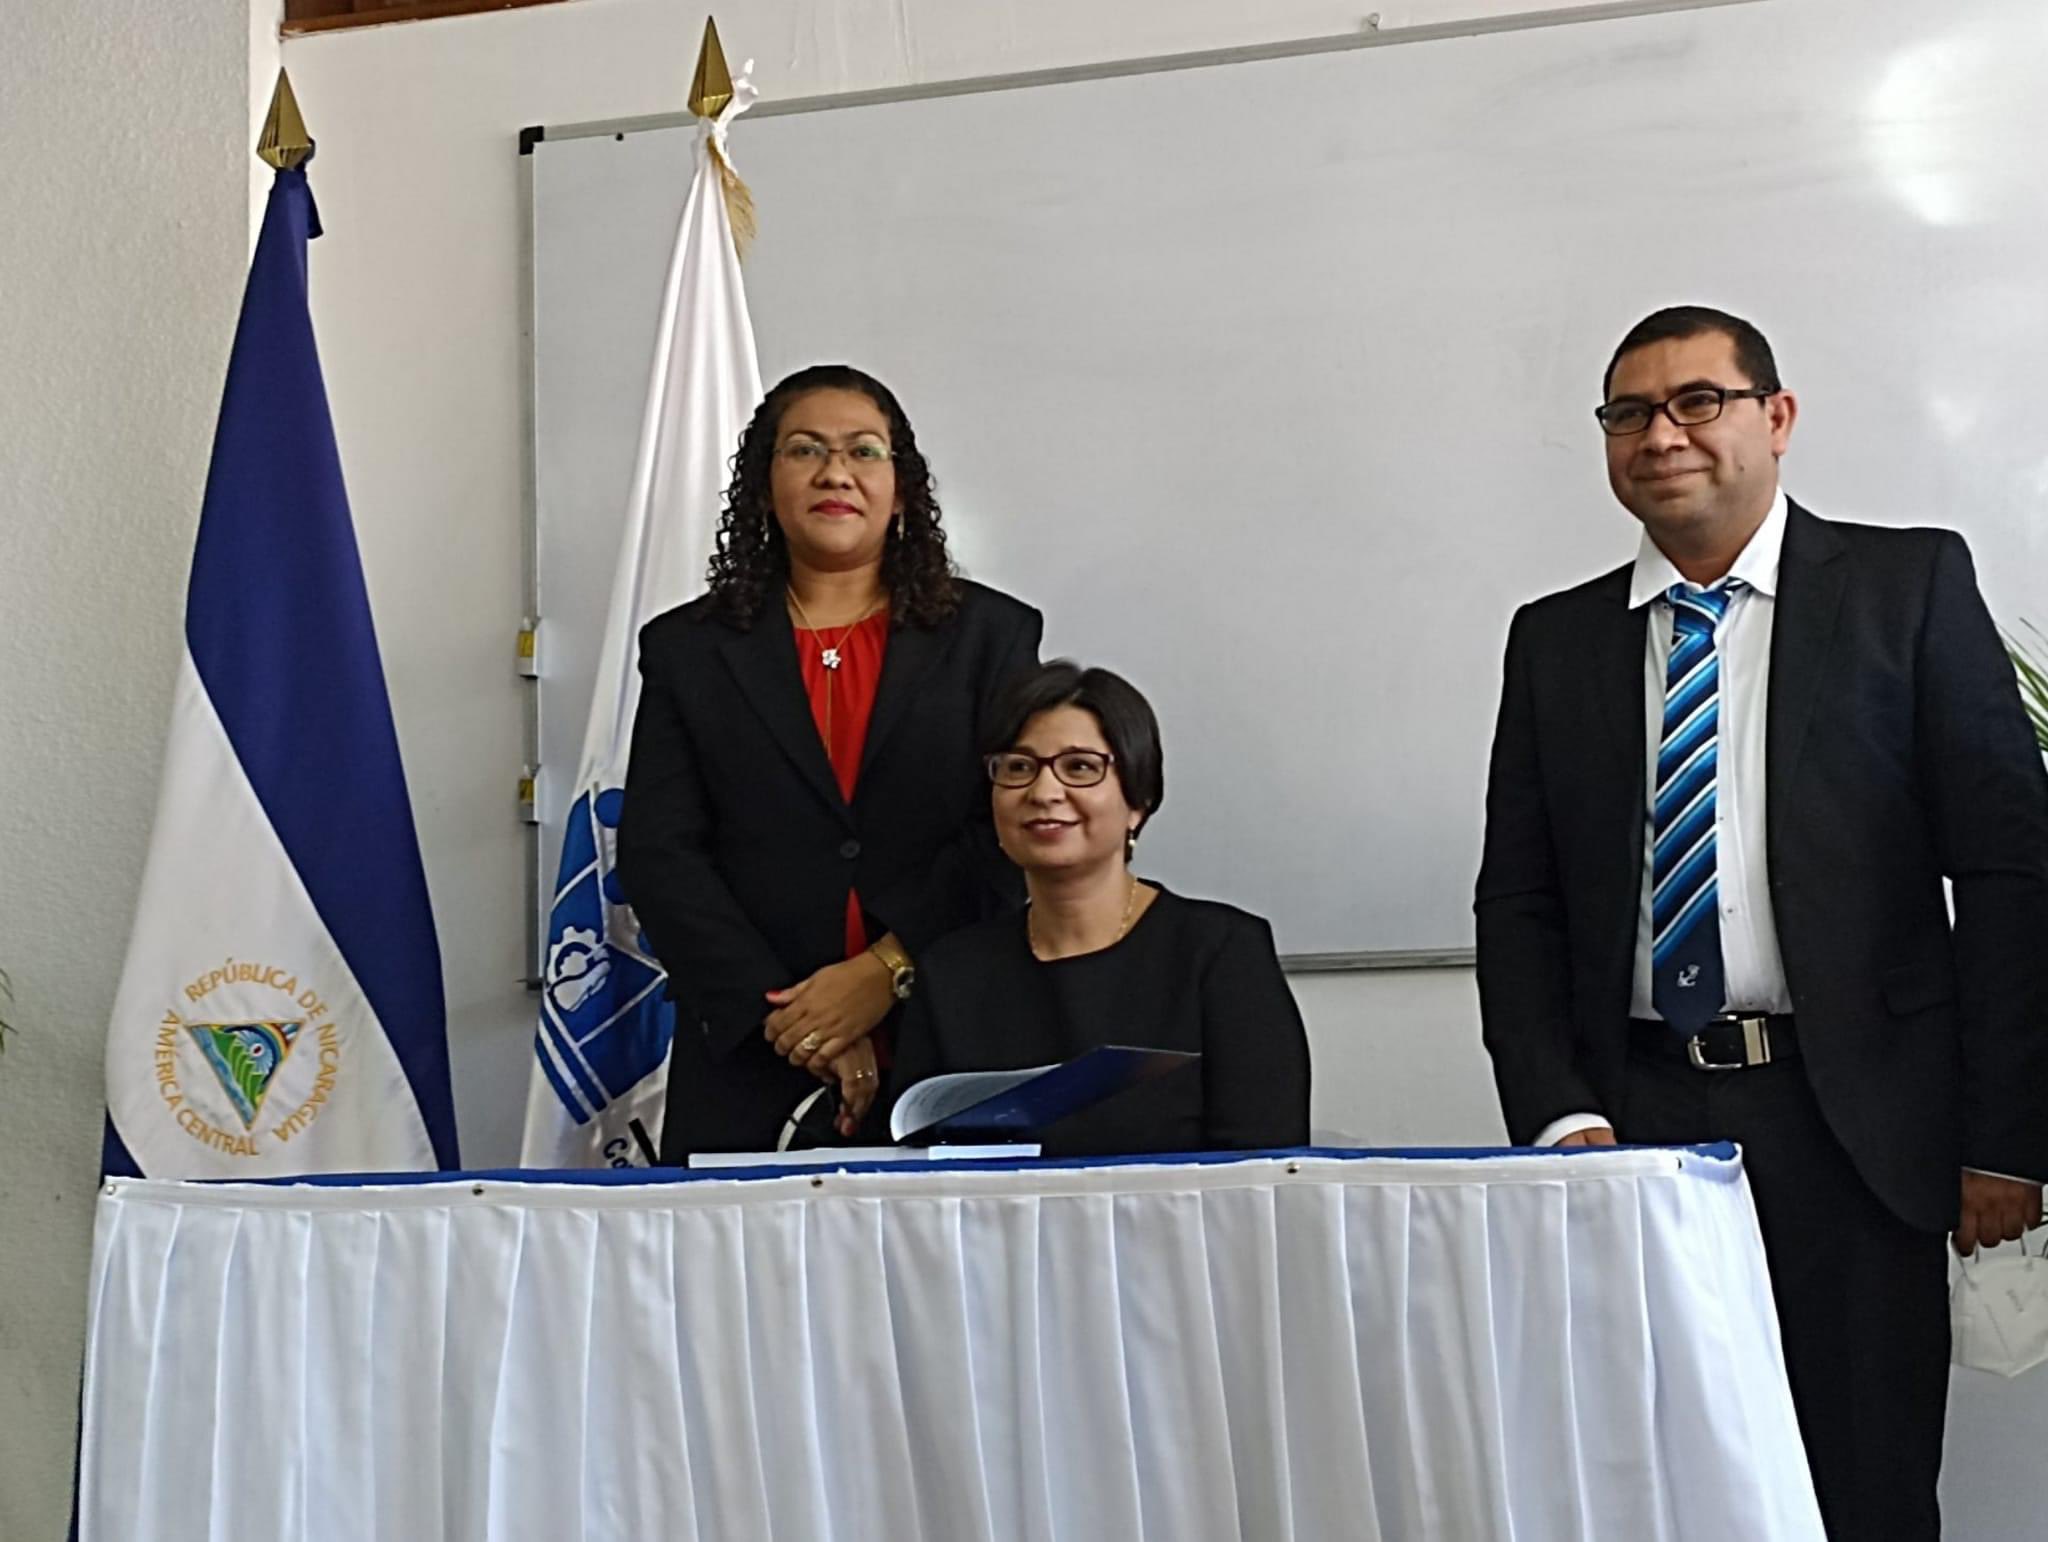 Luz Marina Ortiz Narváez (de pie a la izquierda) al ser juramentada como secretaria general de la nueva Universidad Multidisciplinaria "Ricardo Morales Avilés". Febrero, 2023. Foto: Medios oficialistas.